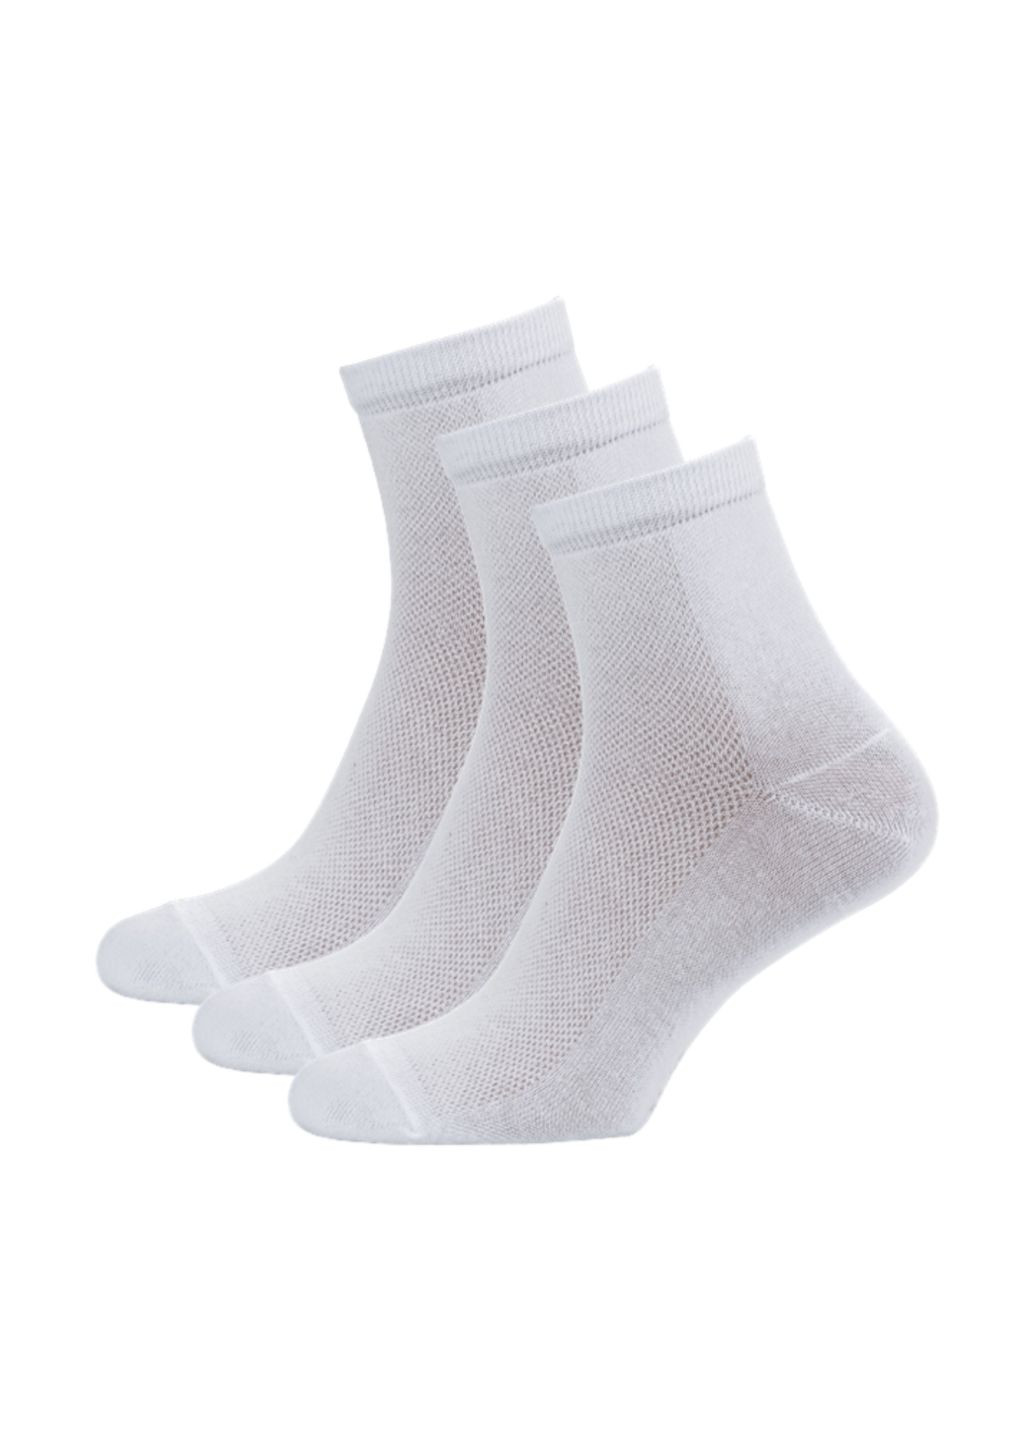 RFT Шкарпетки чол.сер./сітка/RT1111-005/39-42/білий. Набір (3 шт.) MZ rt1111-005_набори (260063185)